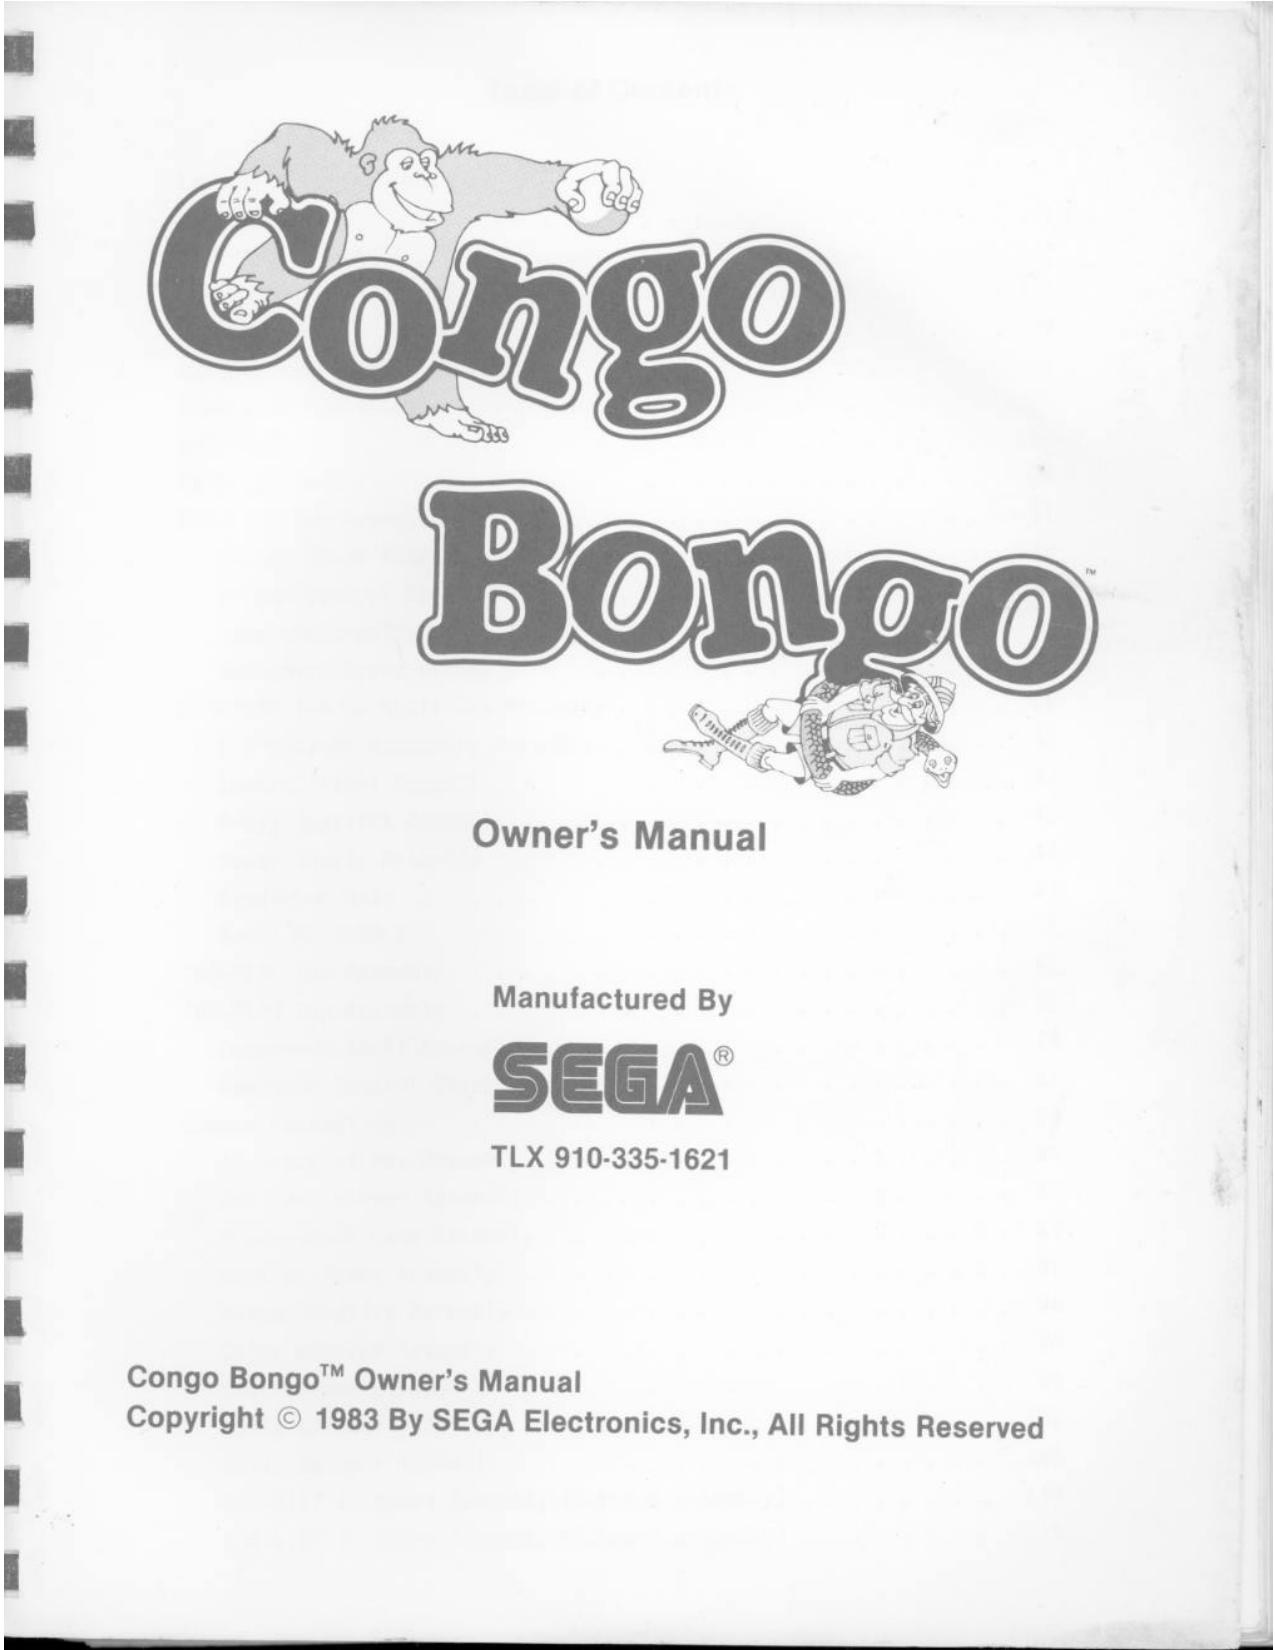 congobongo